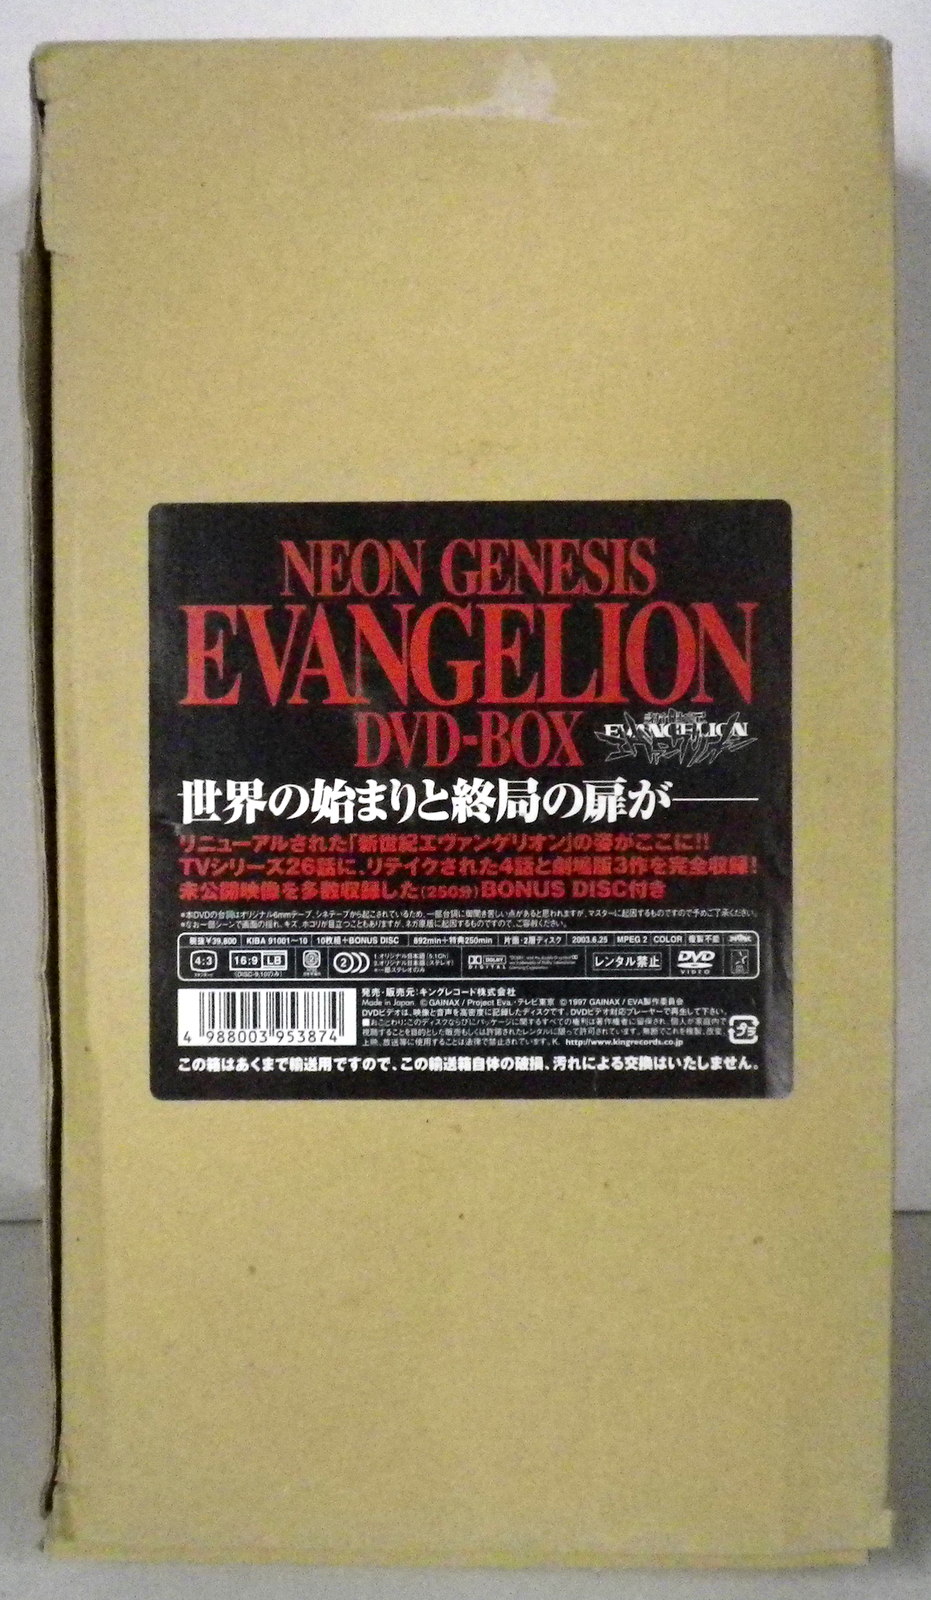 アニメDVD 新世紀エヴァンゲリオン DVD-BOX NEON GENESIS EVANGELION | まんだらけ Mandarake